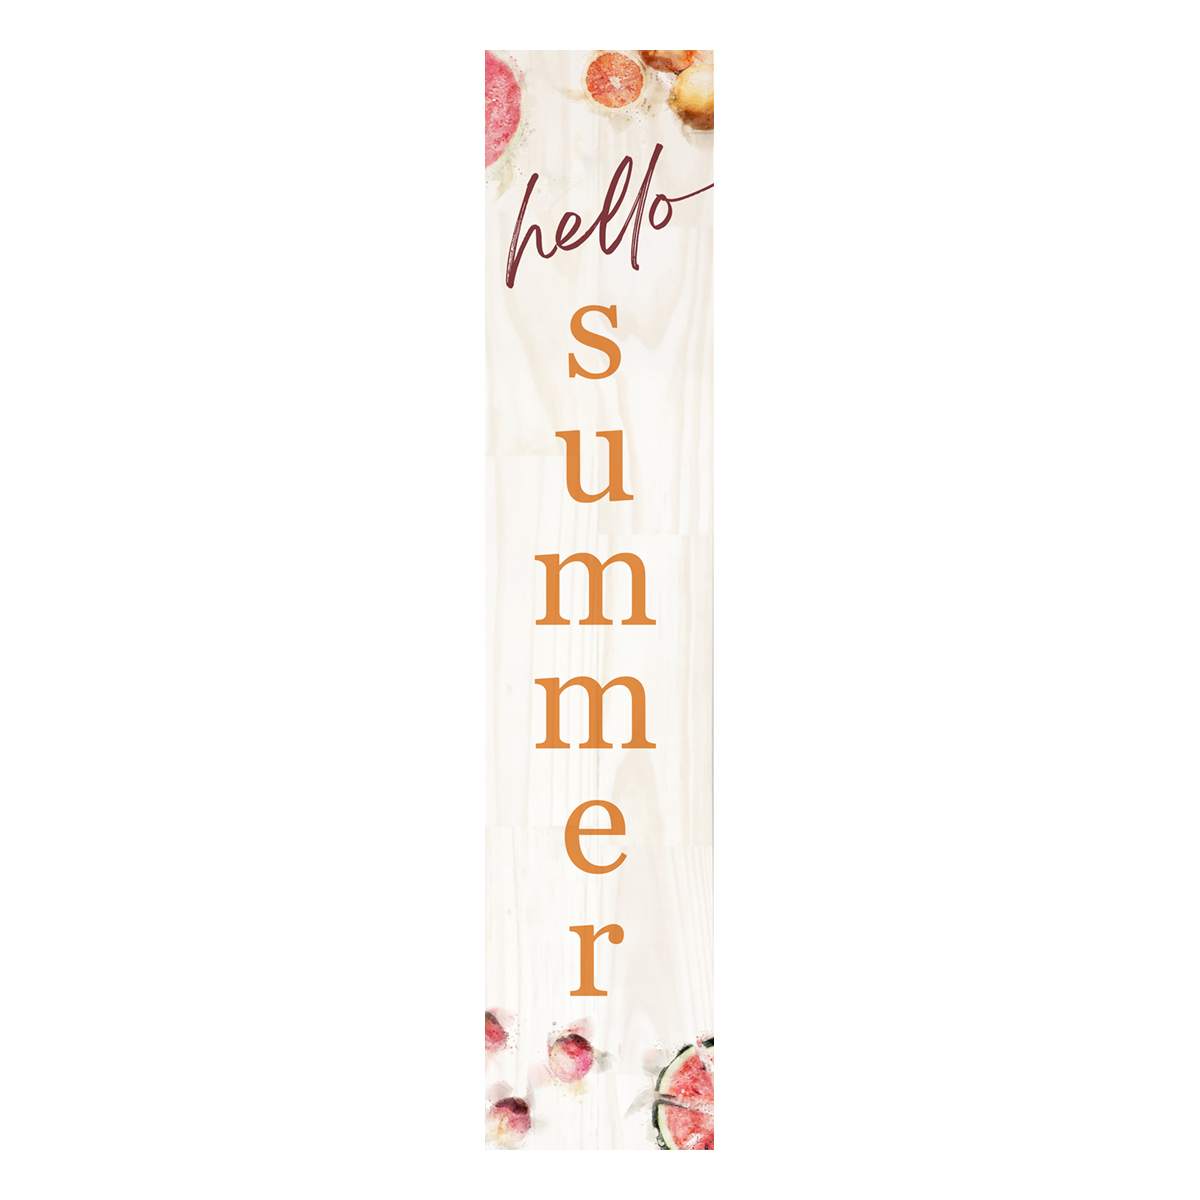 Picture of Hello Summer Porch Board white